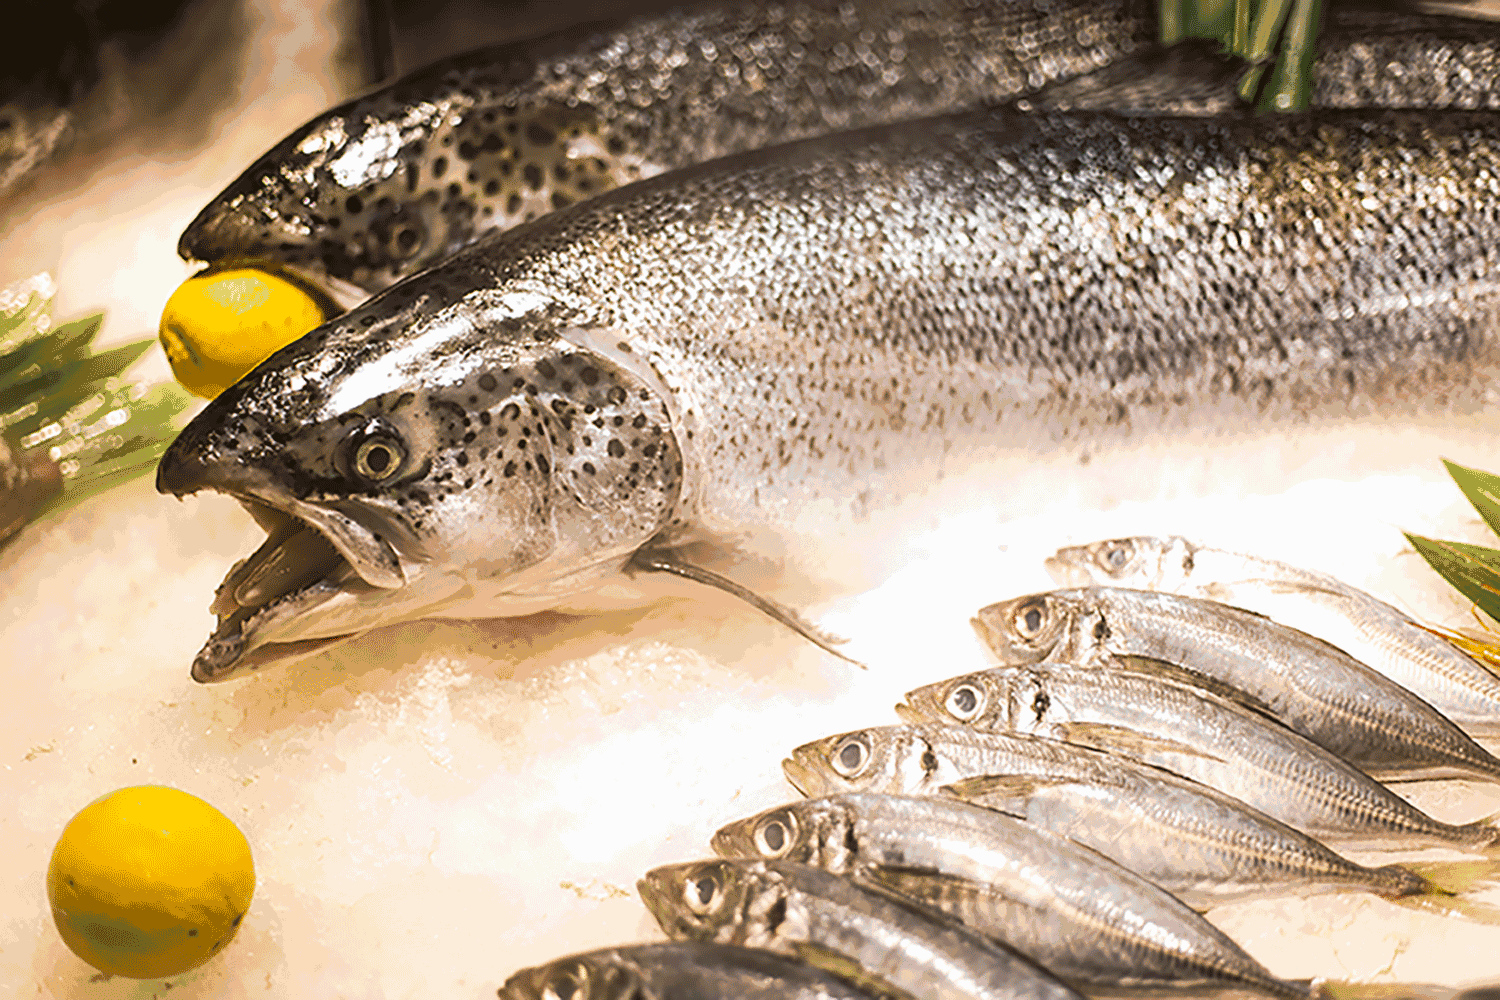 喜多多彬芳店8月5日上午8点至11点挪威三文鱼来自北欧雪山冰川间清澈